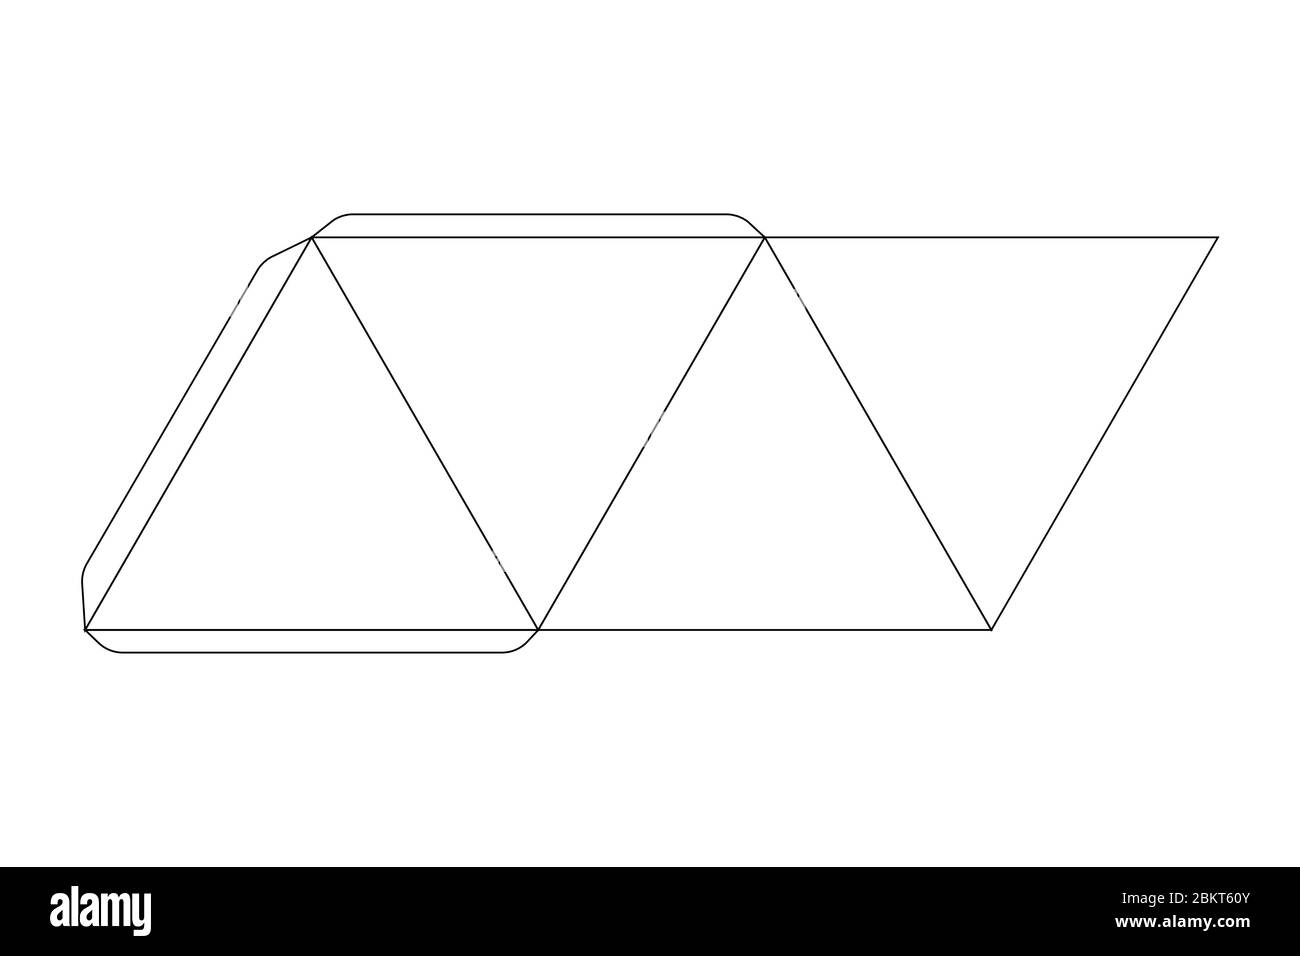 Papierpyramidenschablone, Trimmschema auf weiß Stock Vektor